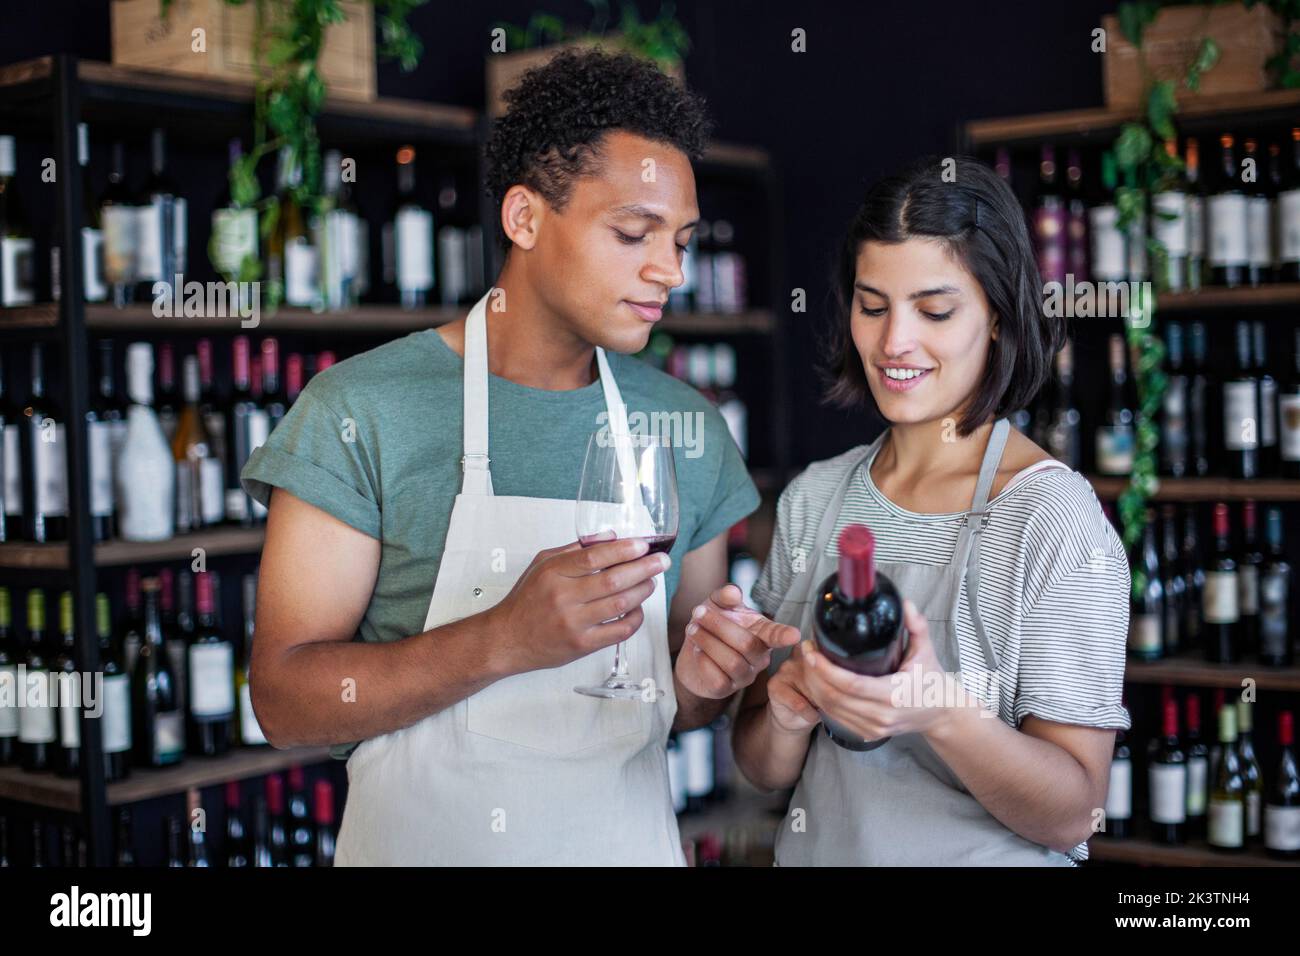 Mitarbeiter des Spirituosenladens halten eine Flasche und ein Glas Wein in der Hand Stockfoto